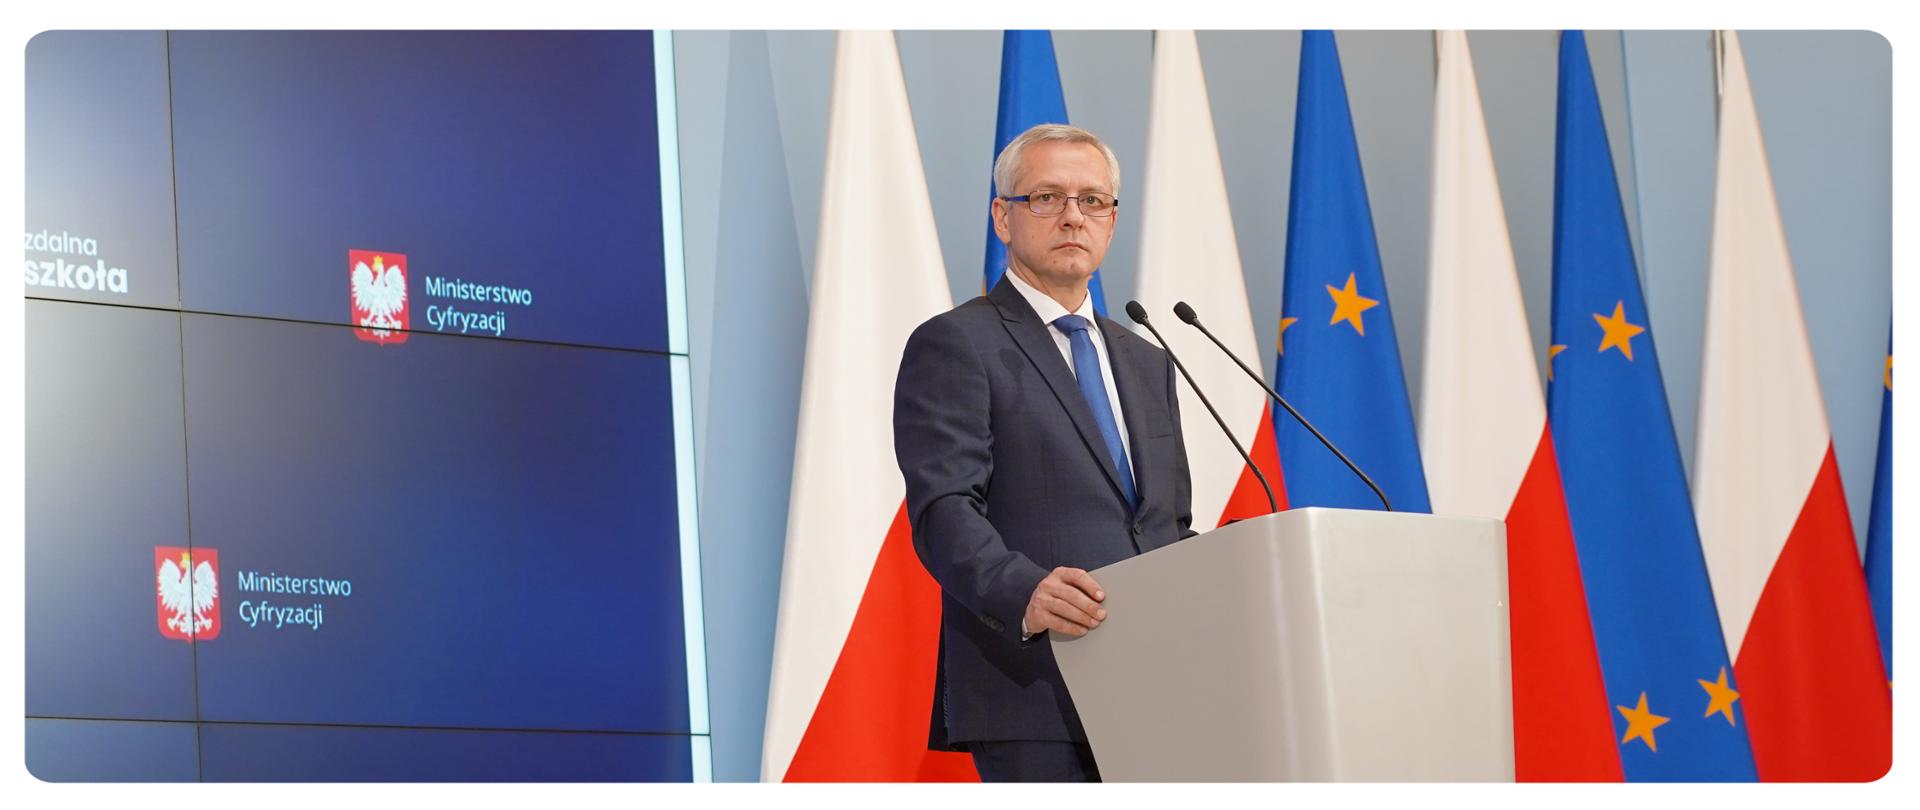 Minister Marek Zagórski przy mównicy, patrzy w prawą stronę. Za nim na ekranie fragment prezentacji - widać dwa logotypy MC na granatowym tle. Po lewej stronie ministra flagi: polskie i unijne